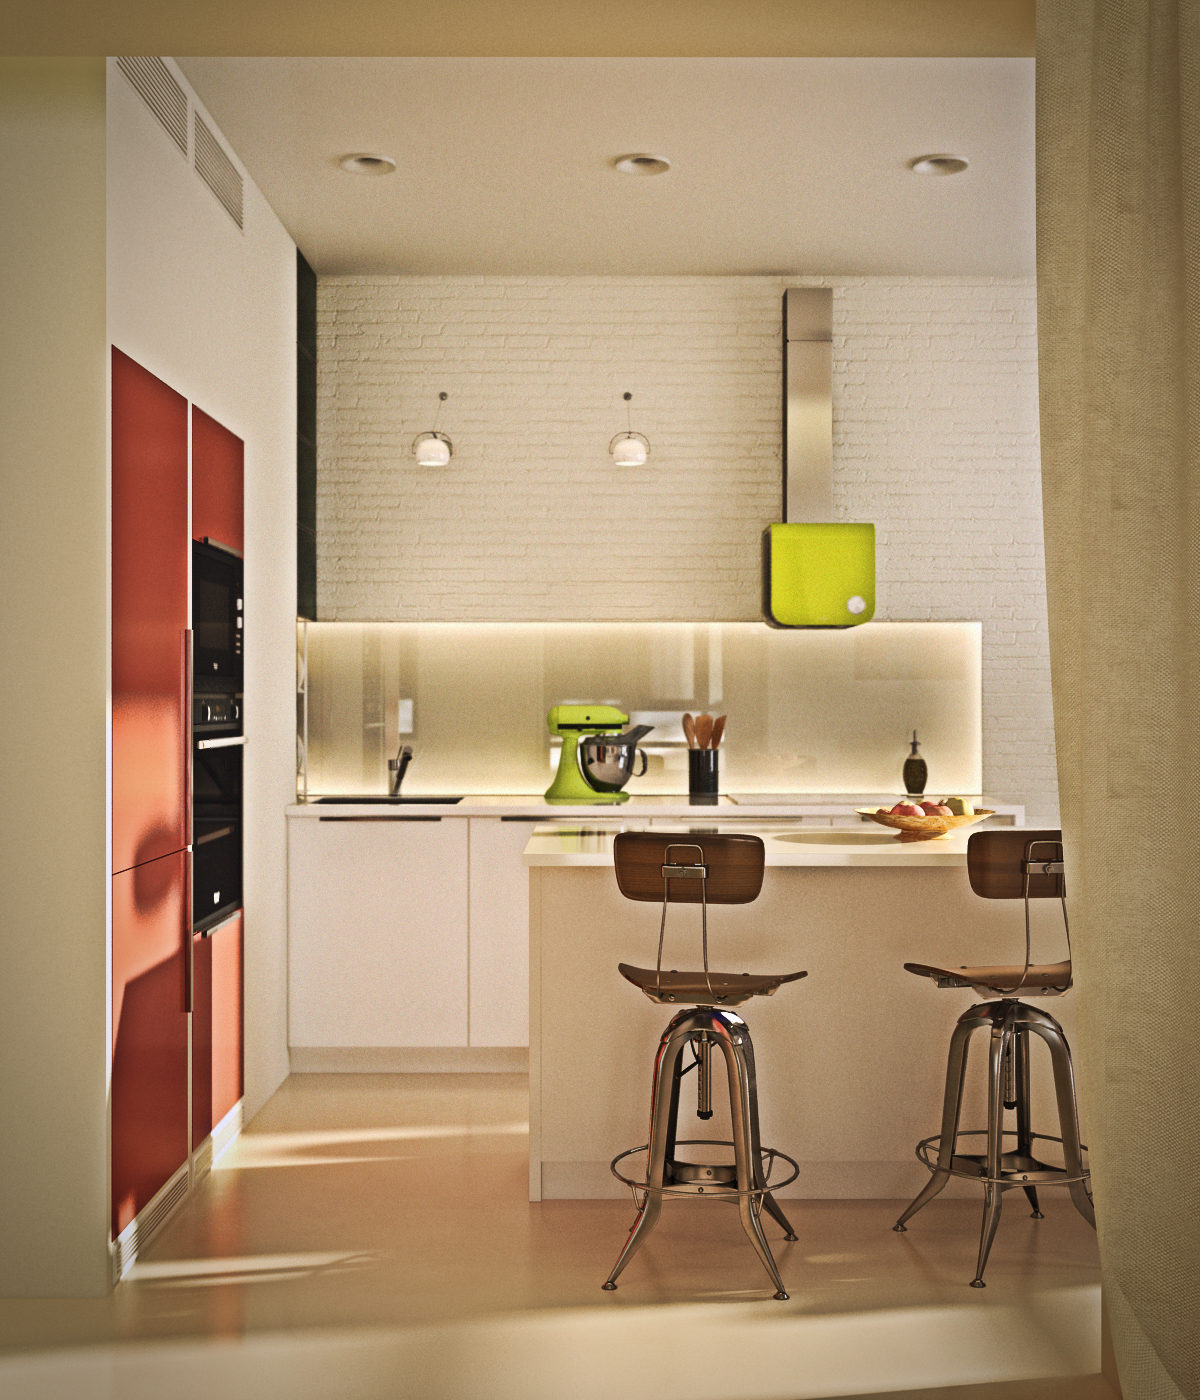 Дизайн интерьер квартира студия минимализм стиль Interior  Design flat studio Minimalism